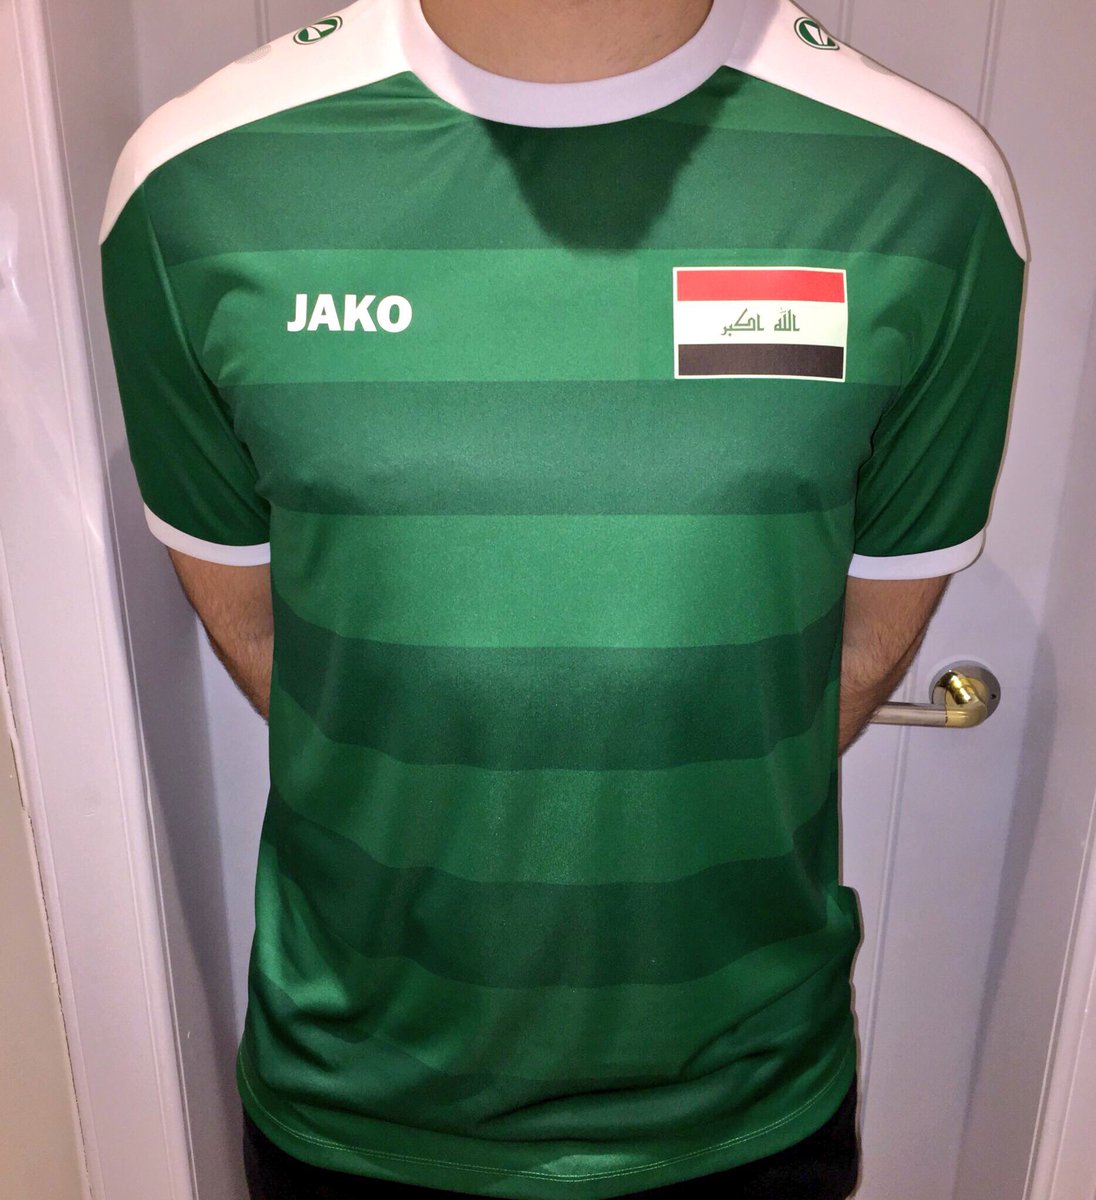 iraq jersey